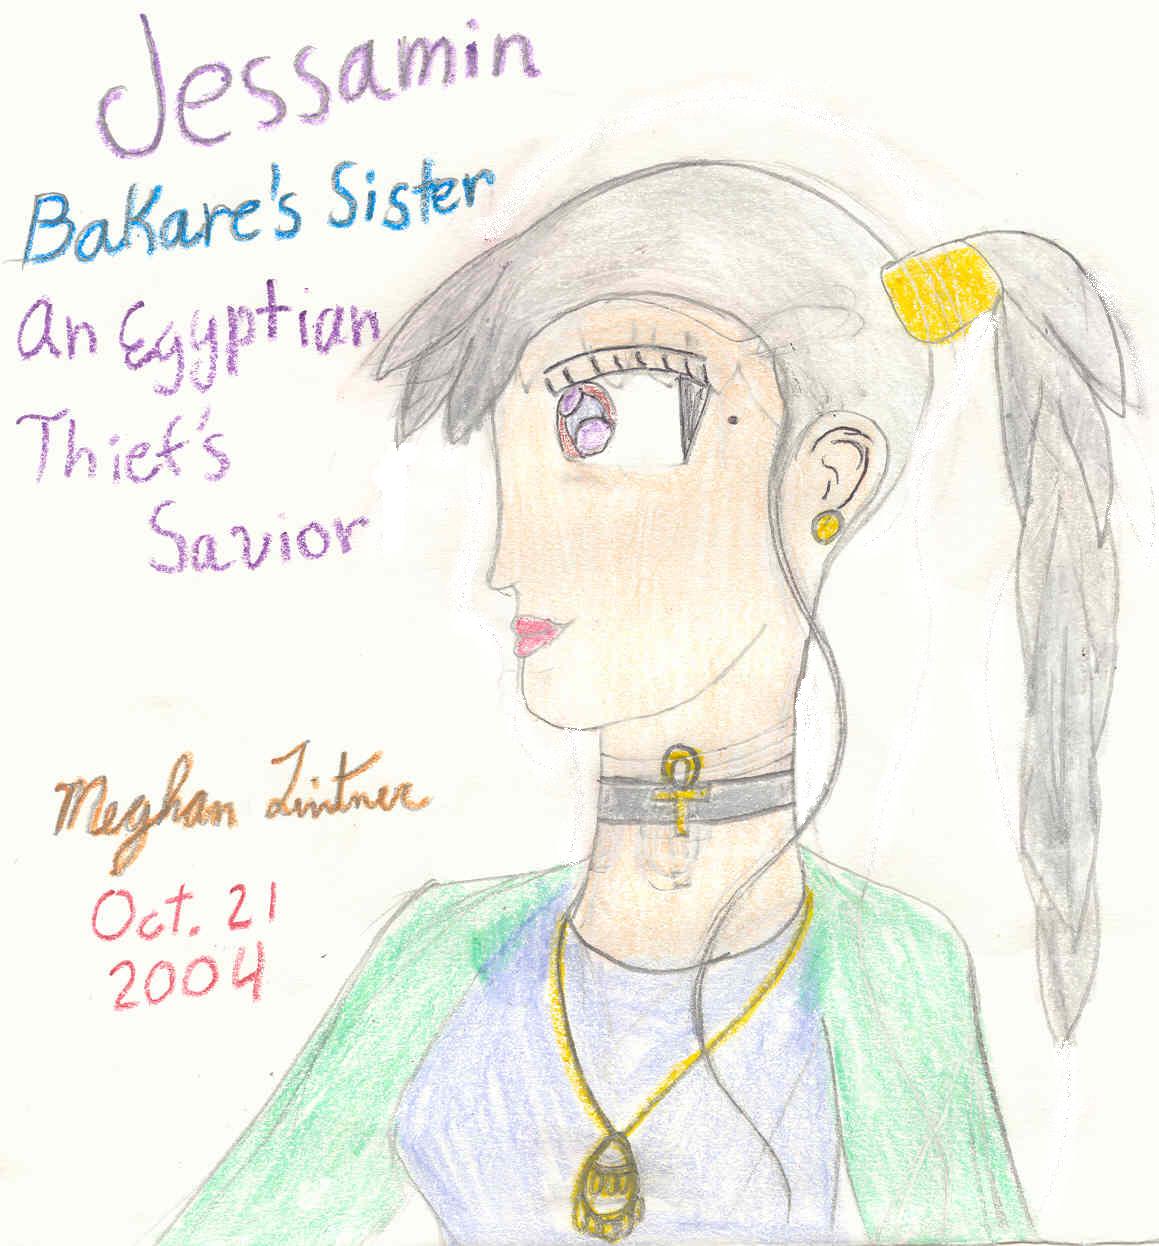 Jessamin - Bakare's Sister by Cleopatra